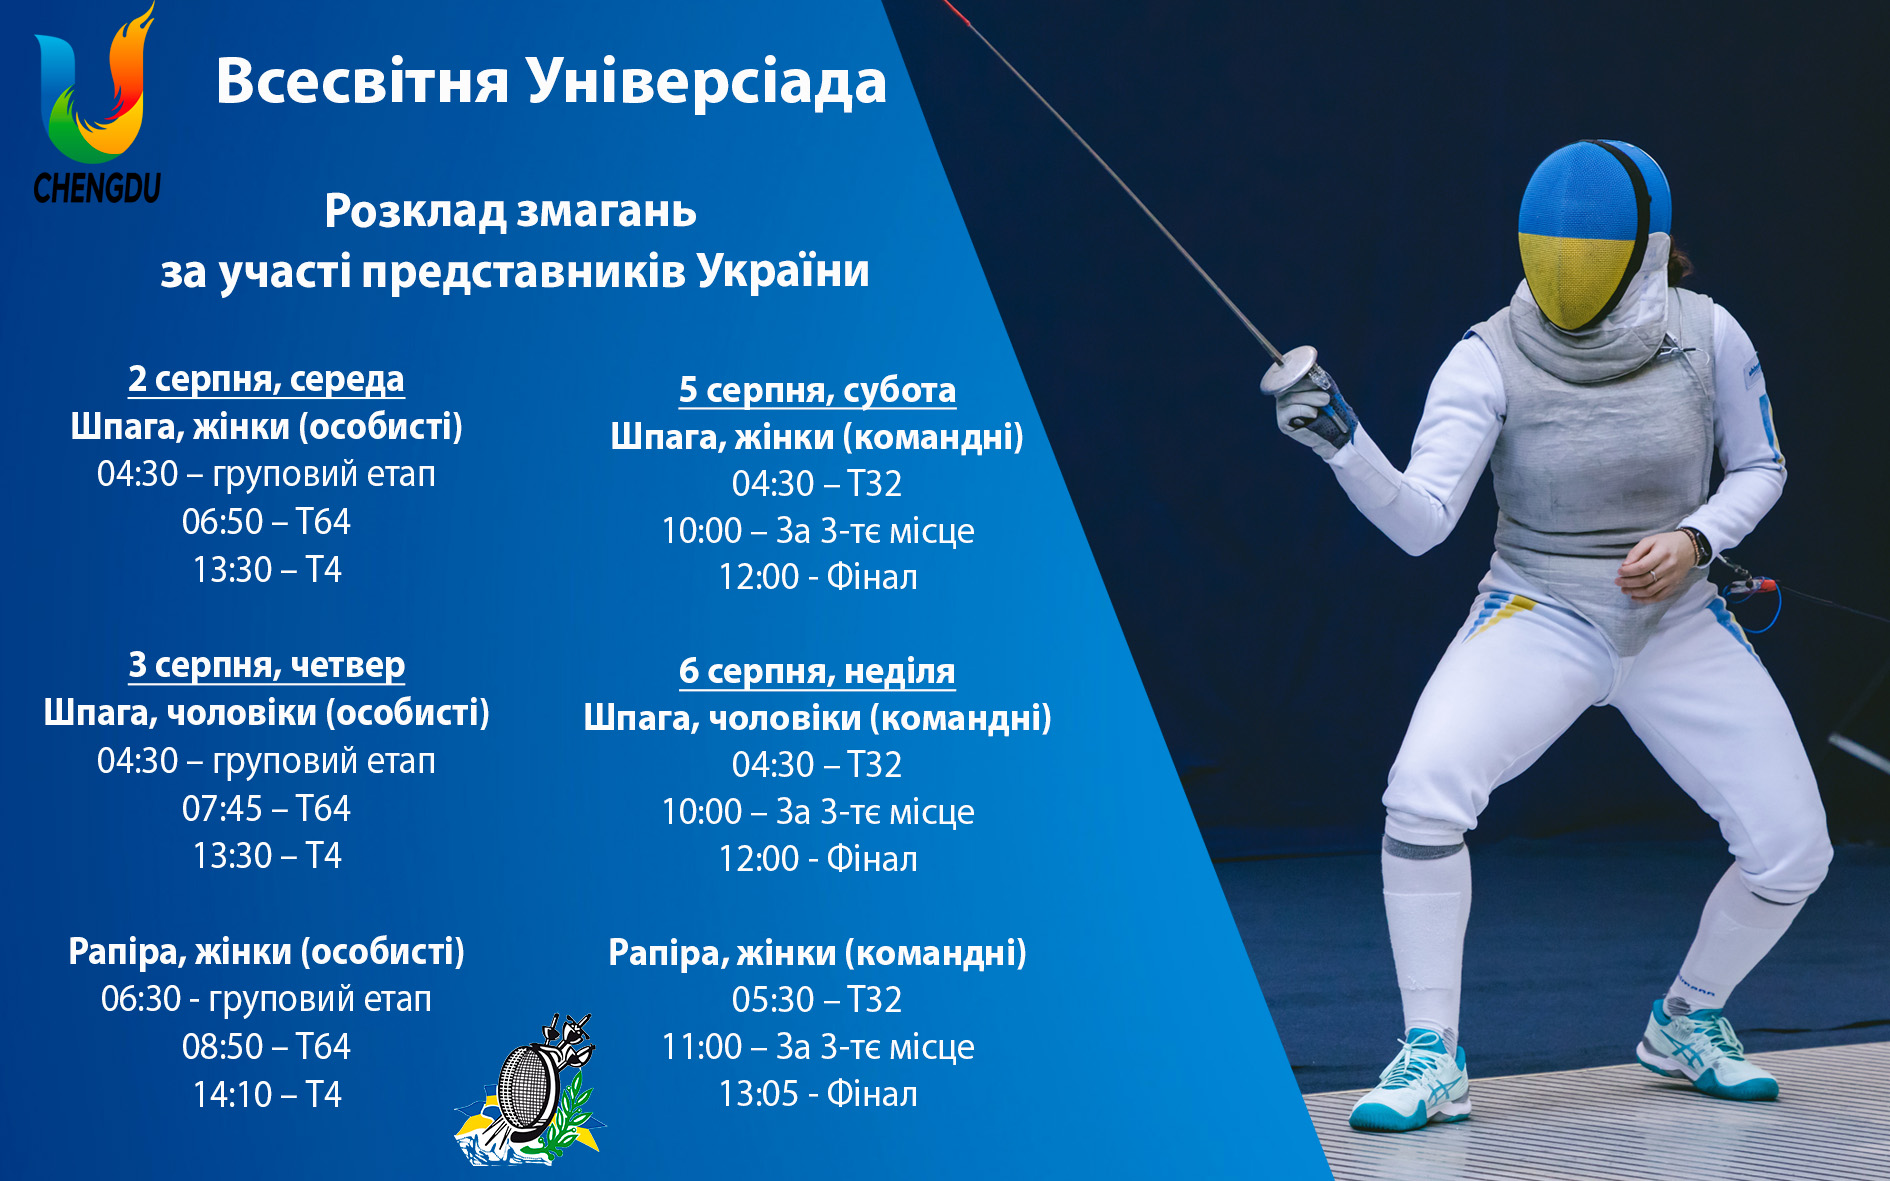 Вболіваємо за українських фехтувальників на Всесвітній Універсіаді!